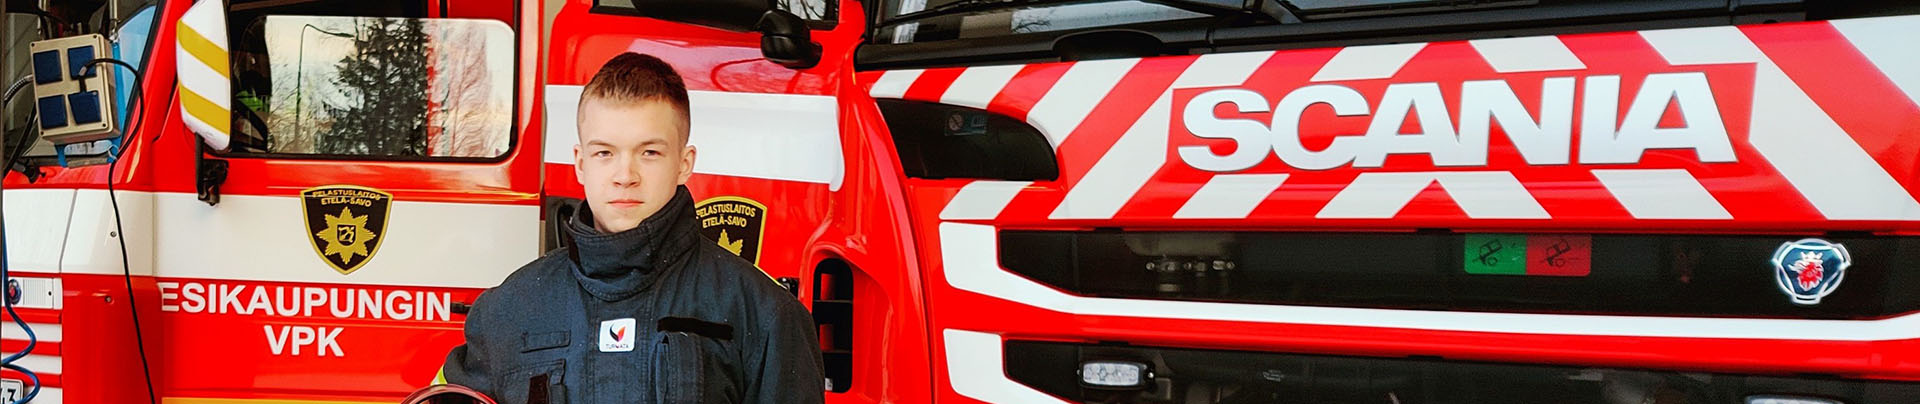 Mikkelin esikaupungin nuori sopimuspalokuntalainen Paavo Mäkelä seisoo paloauton edessä.